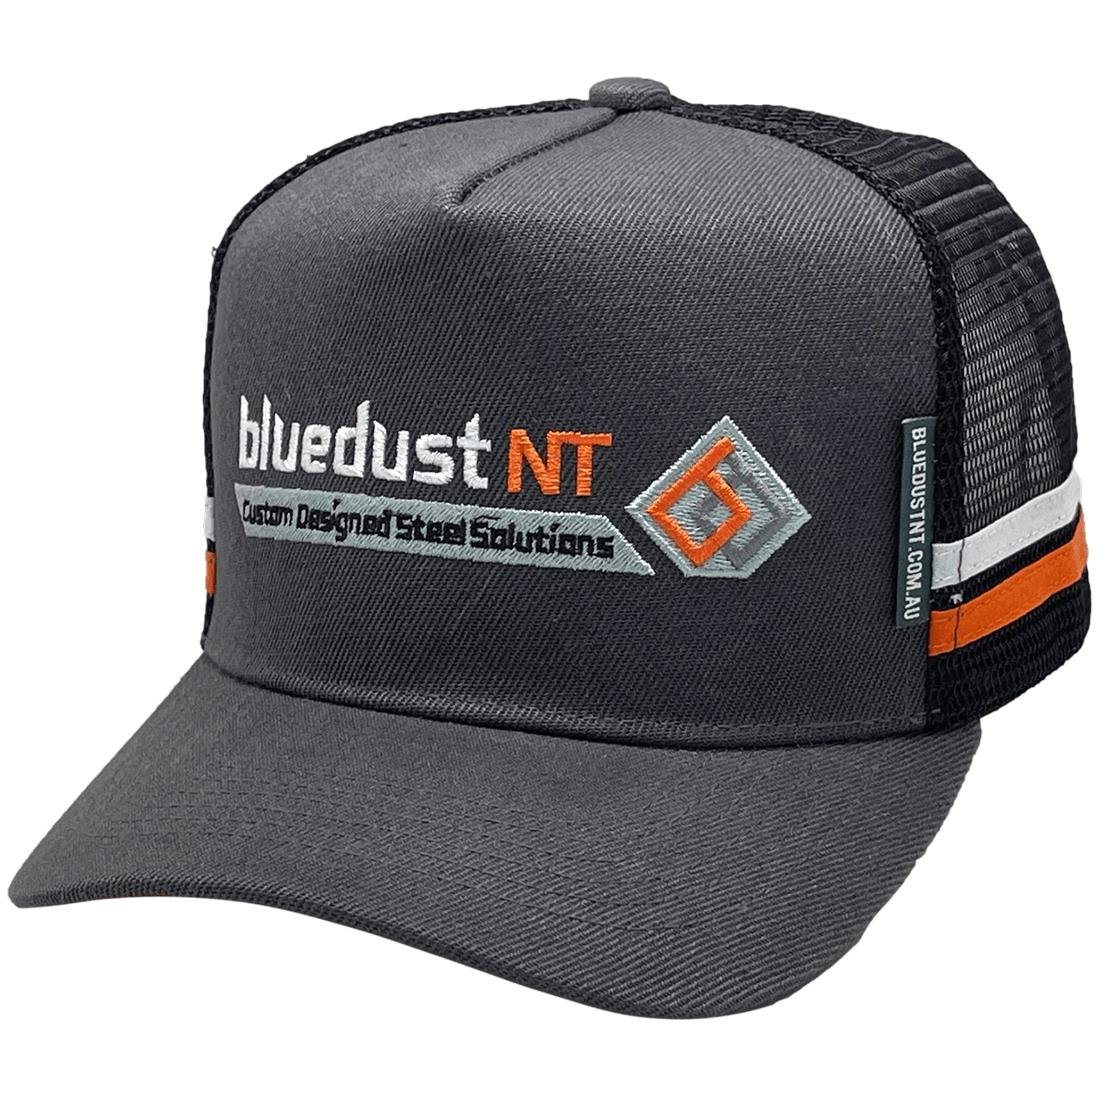 Bluedust NT Custom Midrange Trucker Hat